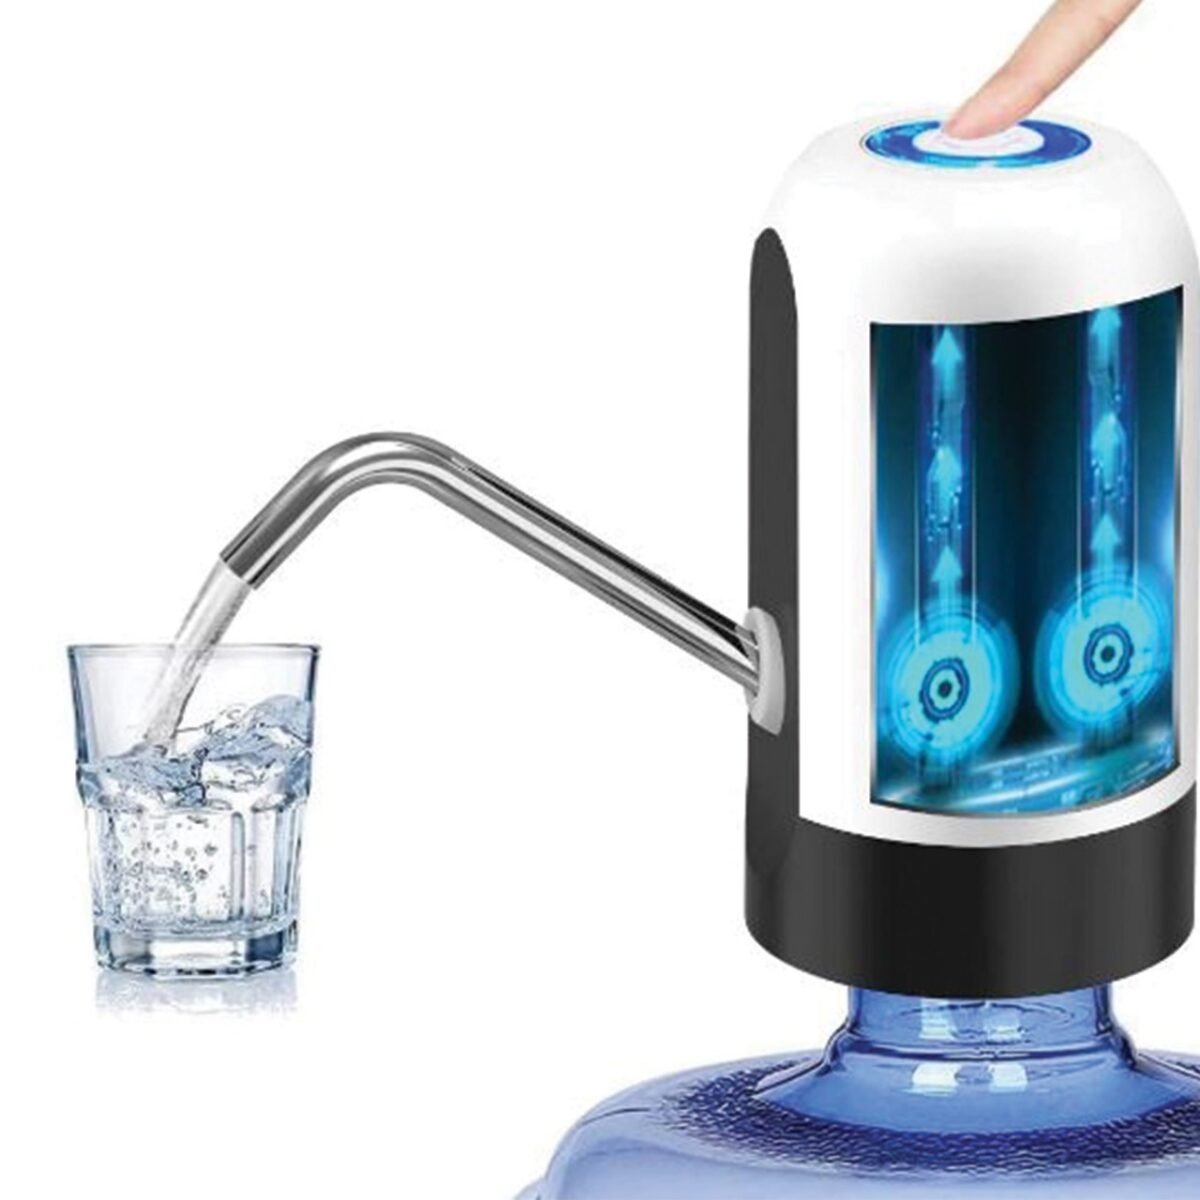 rechargeable-water-dispenser-pump-apna-baazar | rechargeable water dispenser pump